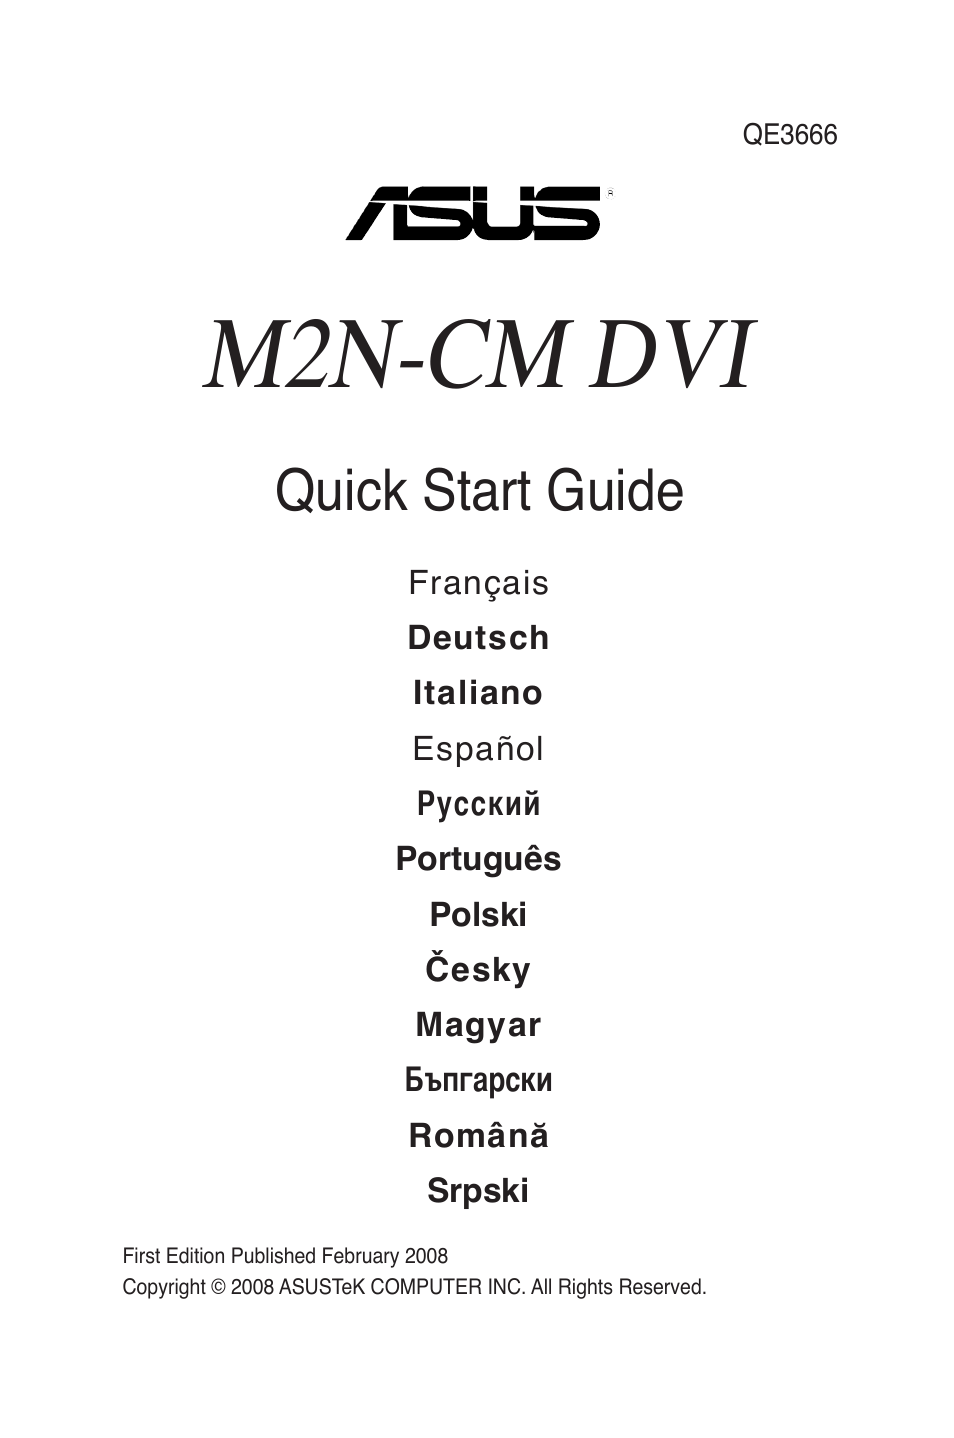 M2N-CM DVI